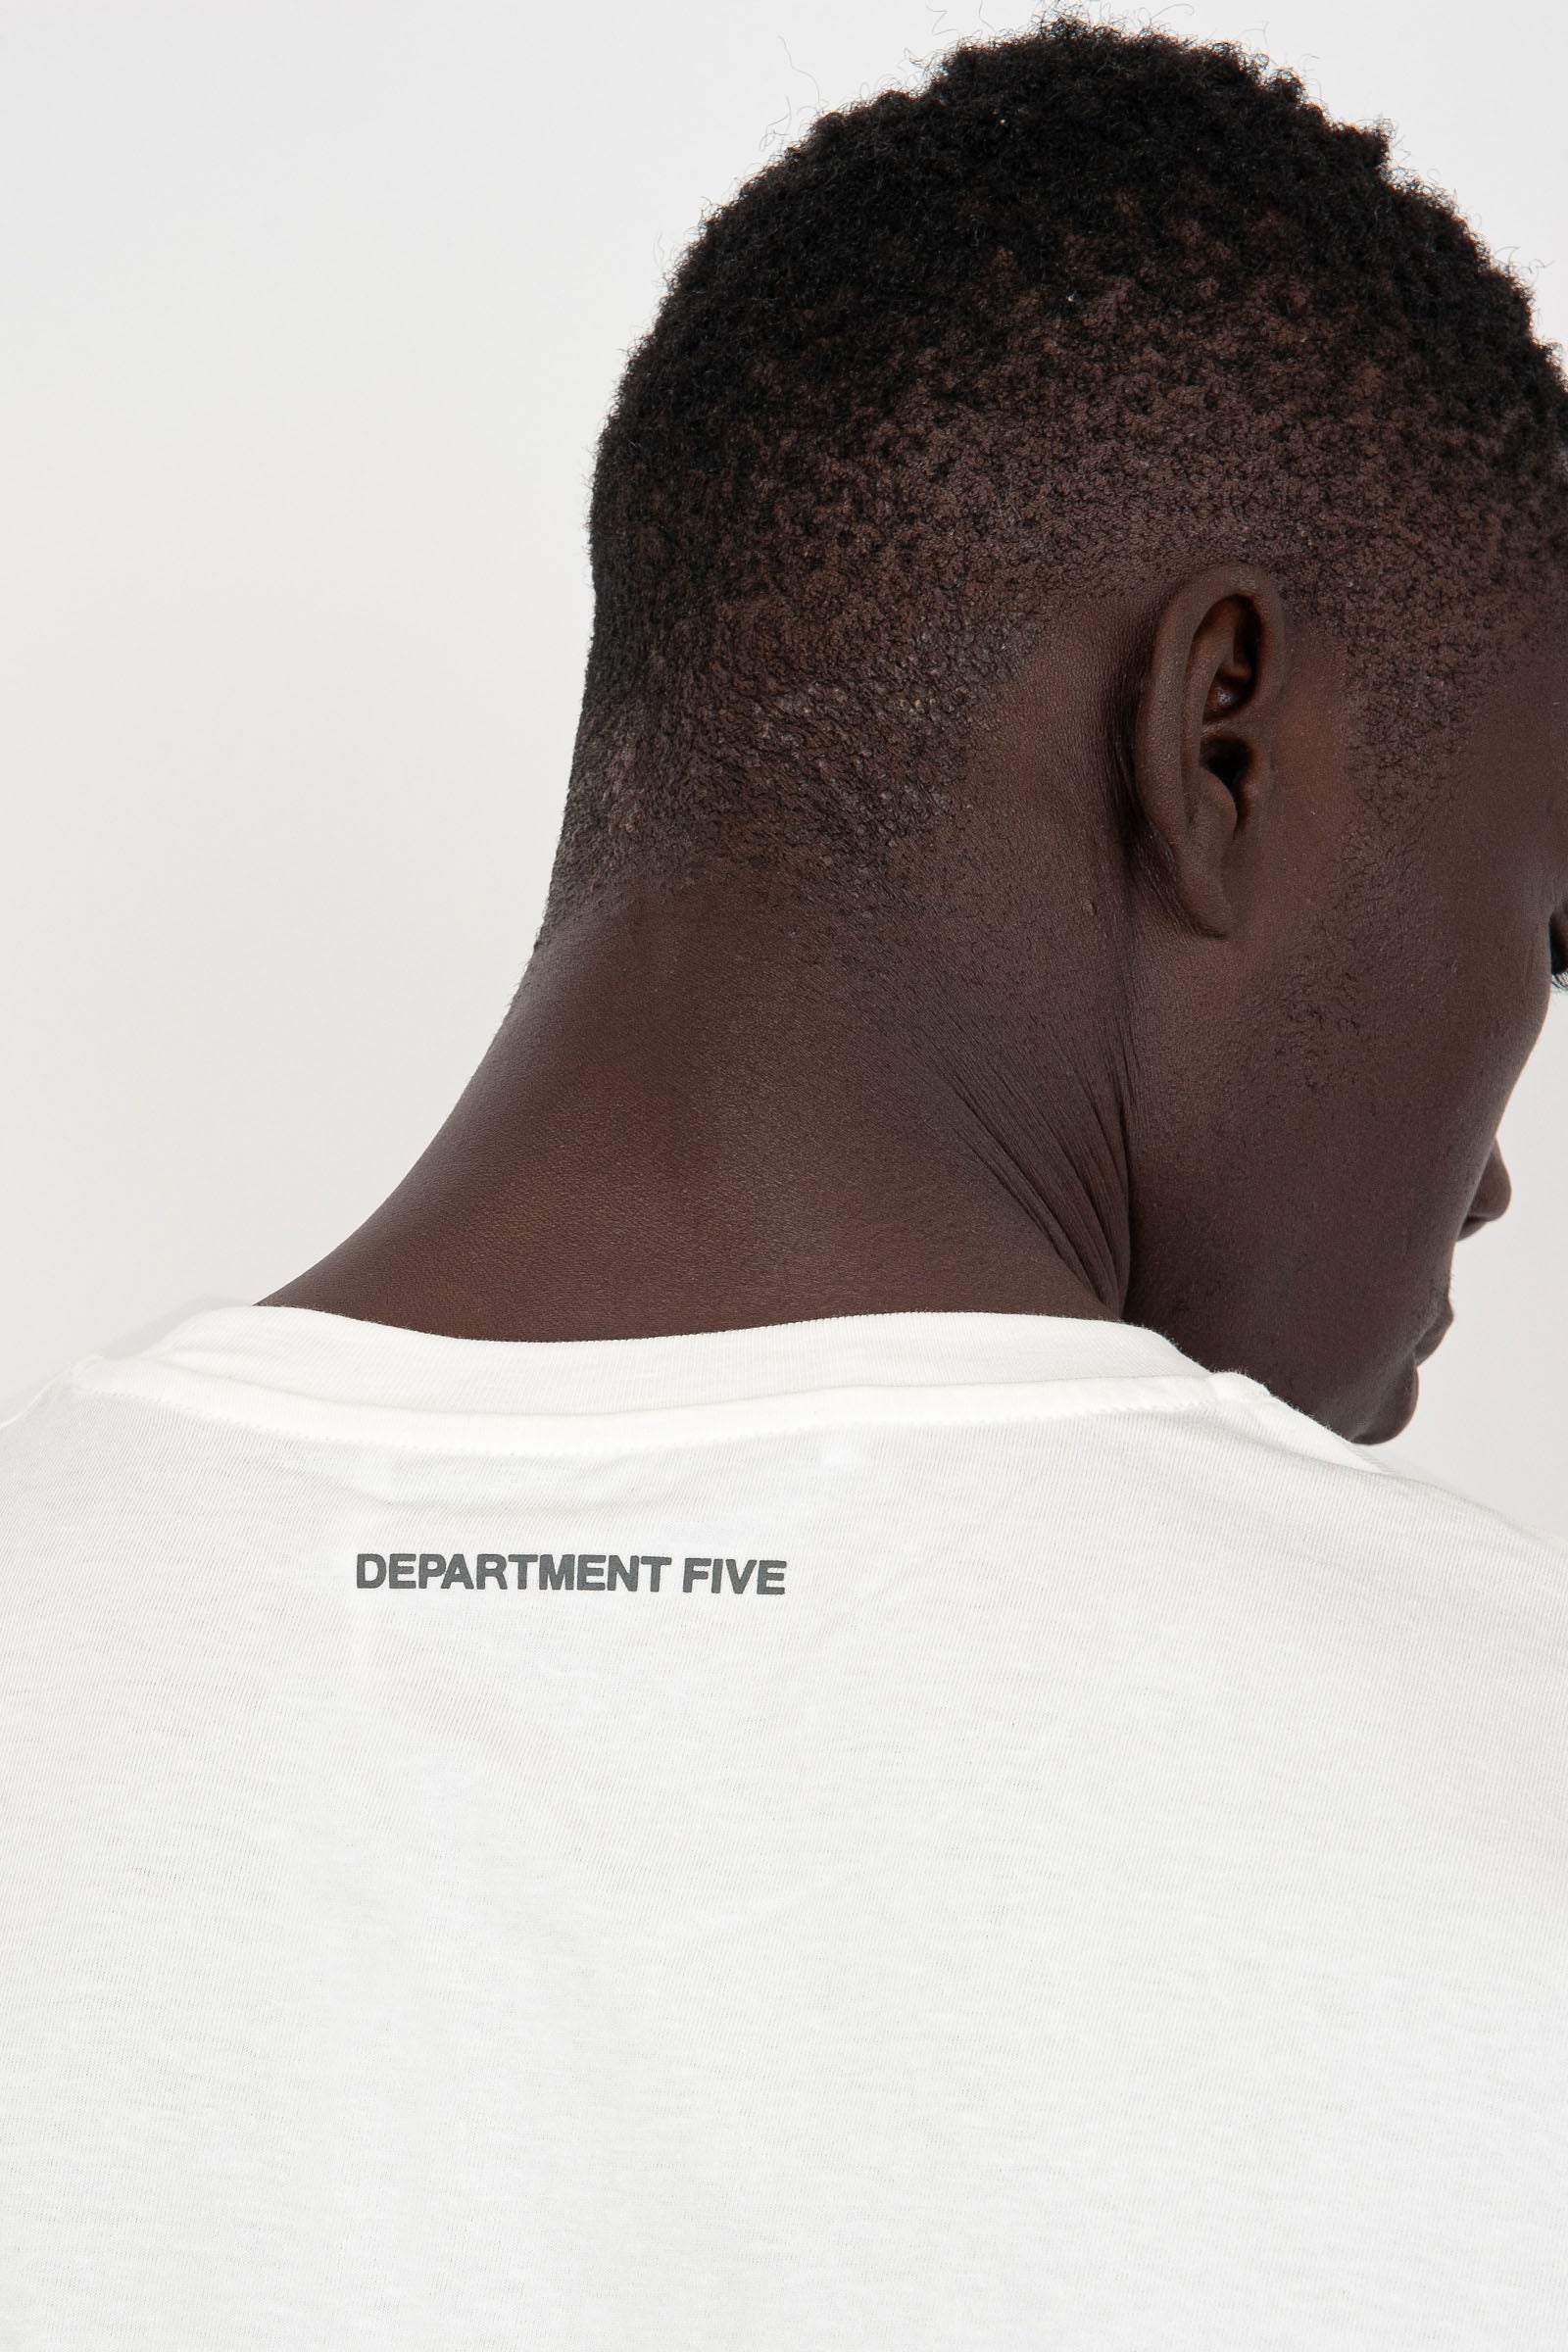 Department Five Cesar Cotton White T-Shirt - 2